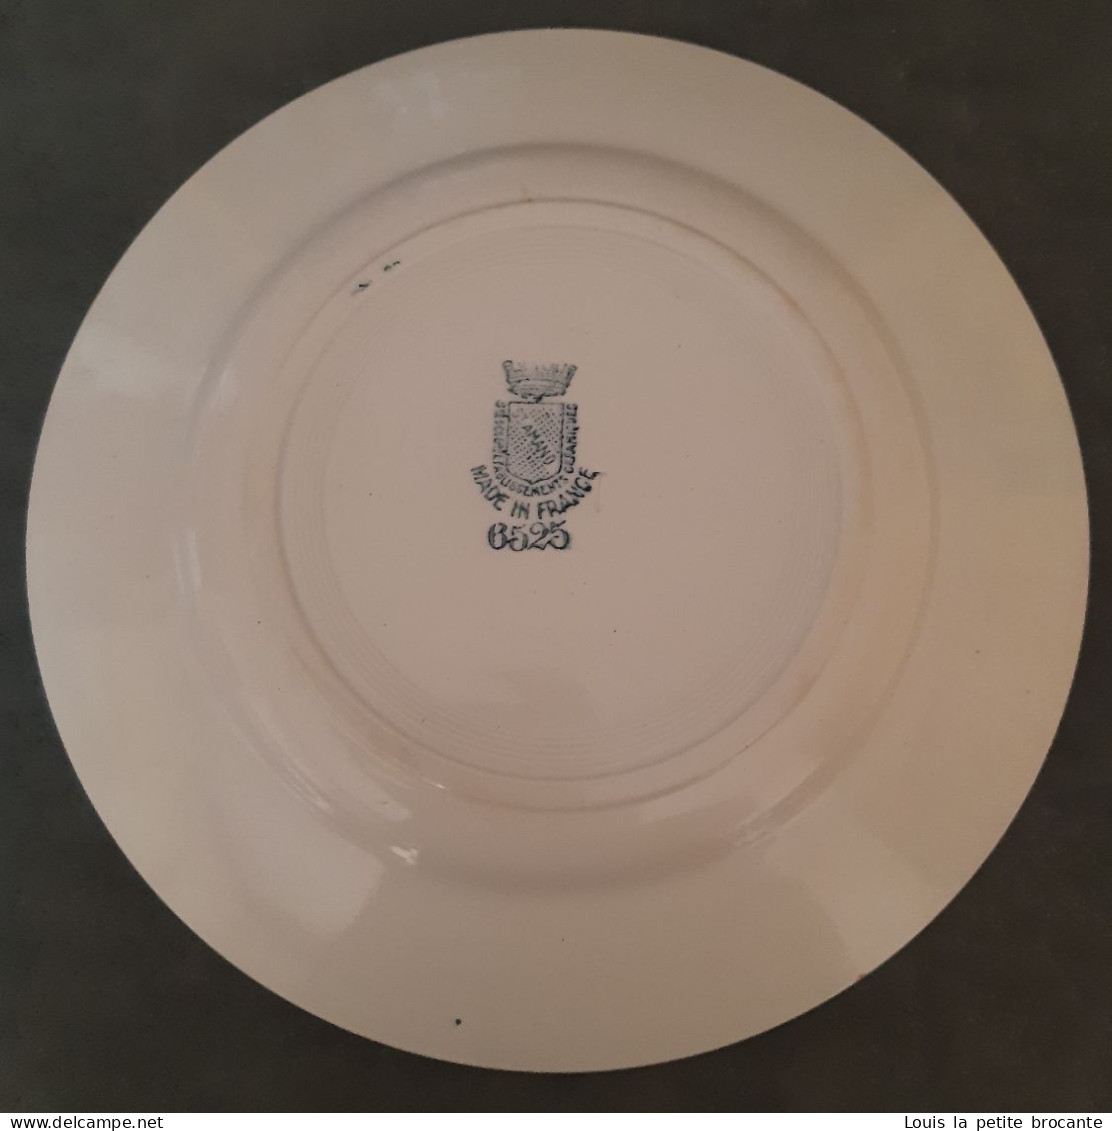 1 Assiette Plate Des Grands établissements Céramiques De ST AMAND, Modèle 6525,  Sans Numéro De Série (rare), - Assiettes